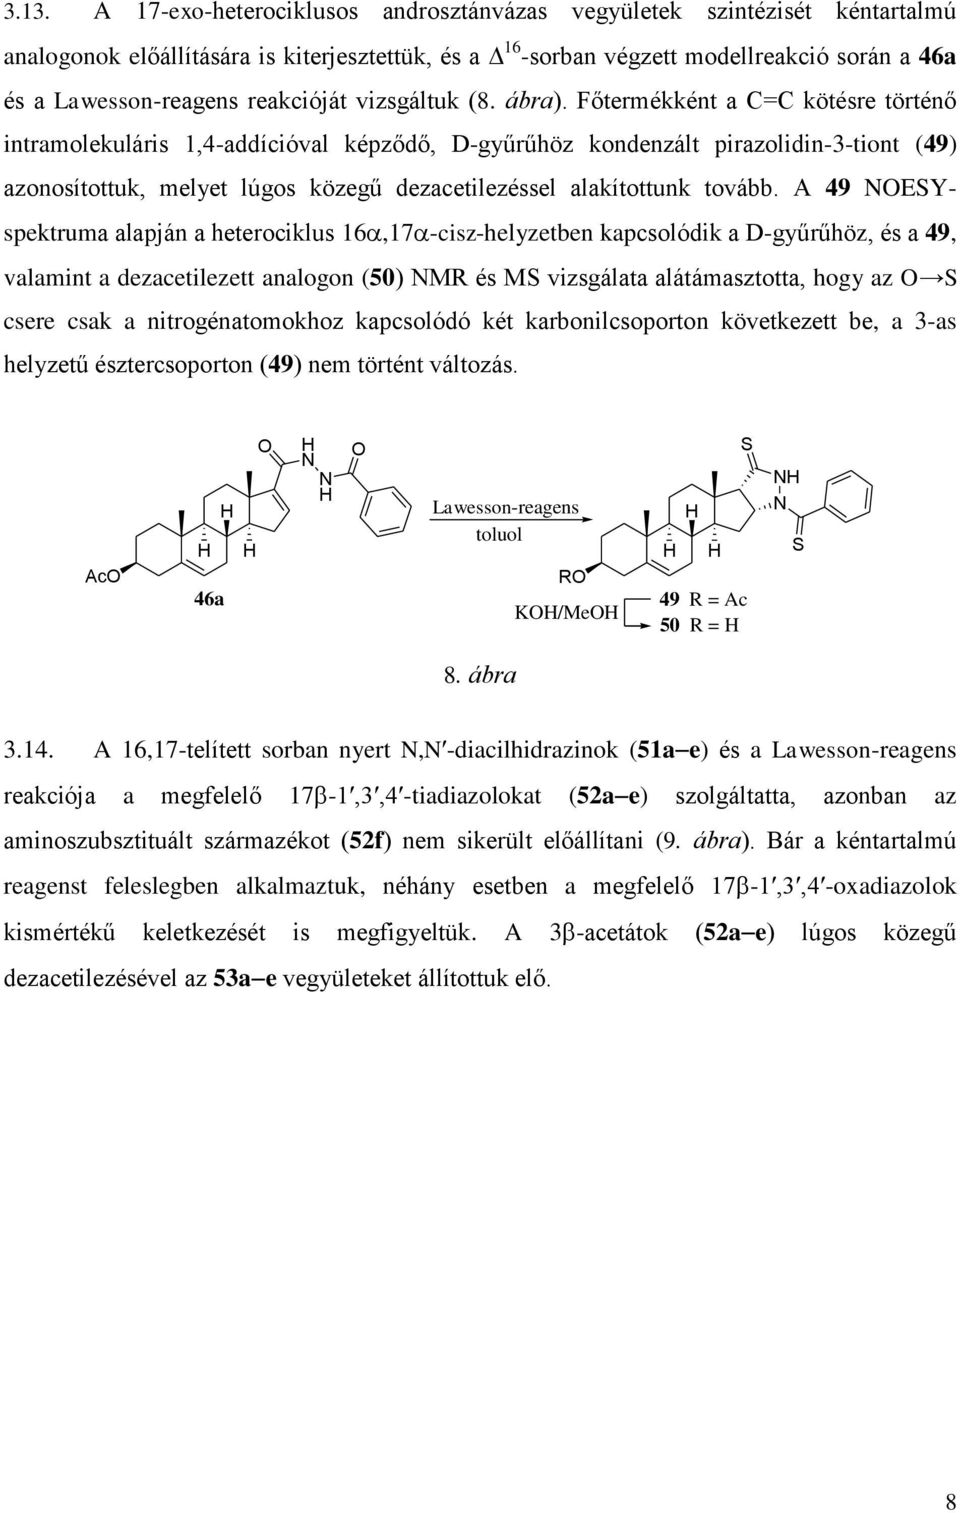 Főtermékként a C=C kötésre történő intramolekuláris 1,4-addícióval képződő, D-gyűrűhöz kondenzált pirazolidin-3-tiont (49) azonosítottuk, melyet lúgos közegű dezacetilezéssel alakítottunk tovább.